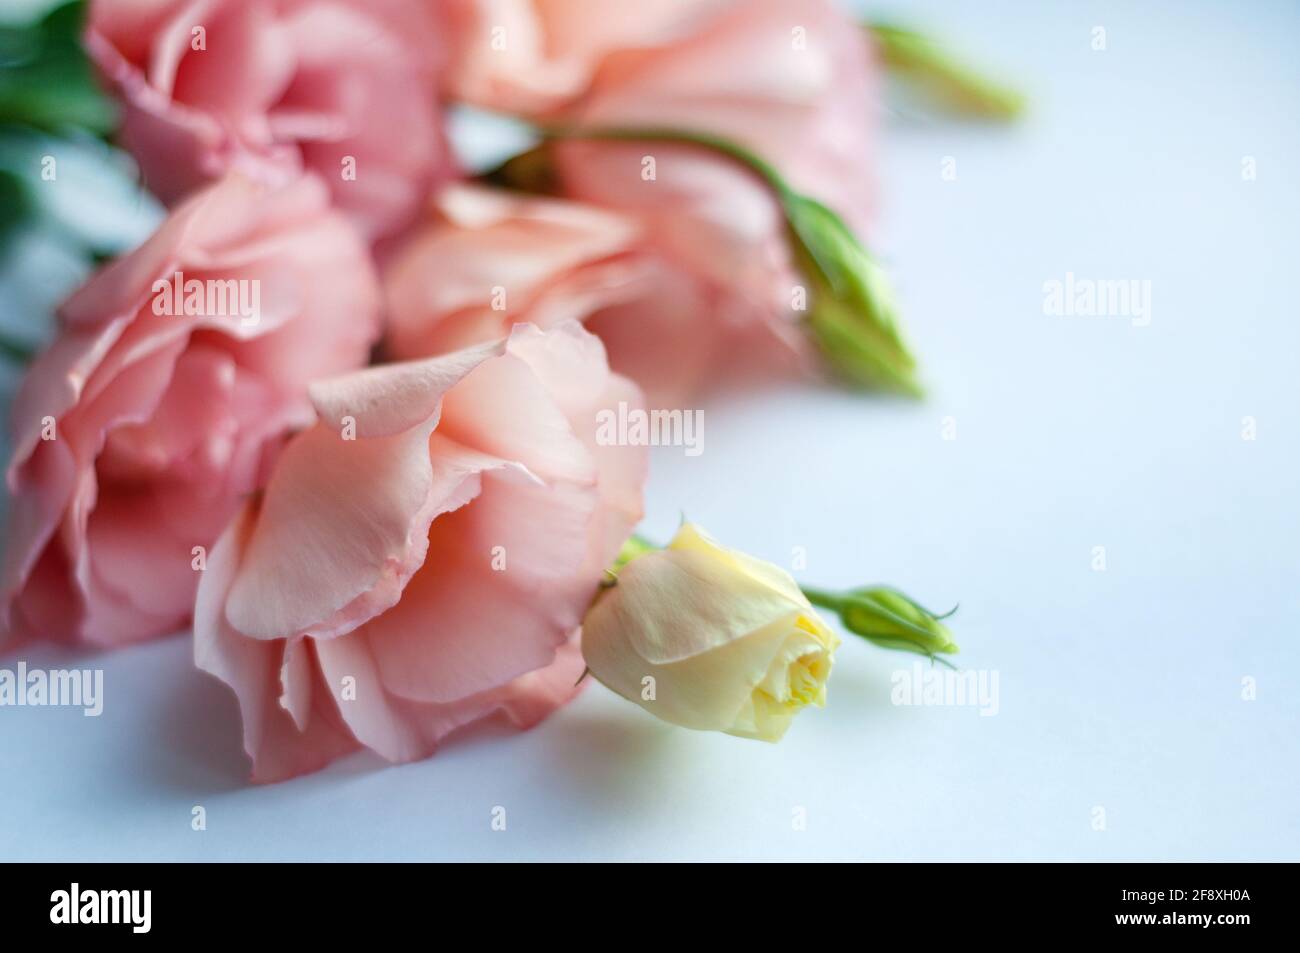 Schöne rosa eustoma Blume (lisianthus) in voller Blüte mit grünen Blättern.  Blumenstrauß auf weißem Hintergrund. Weichfokus Stockfotografie - Alamy